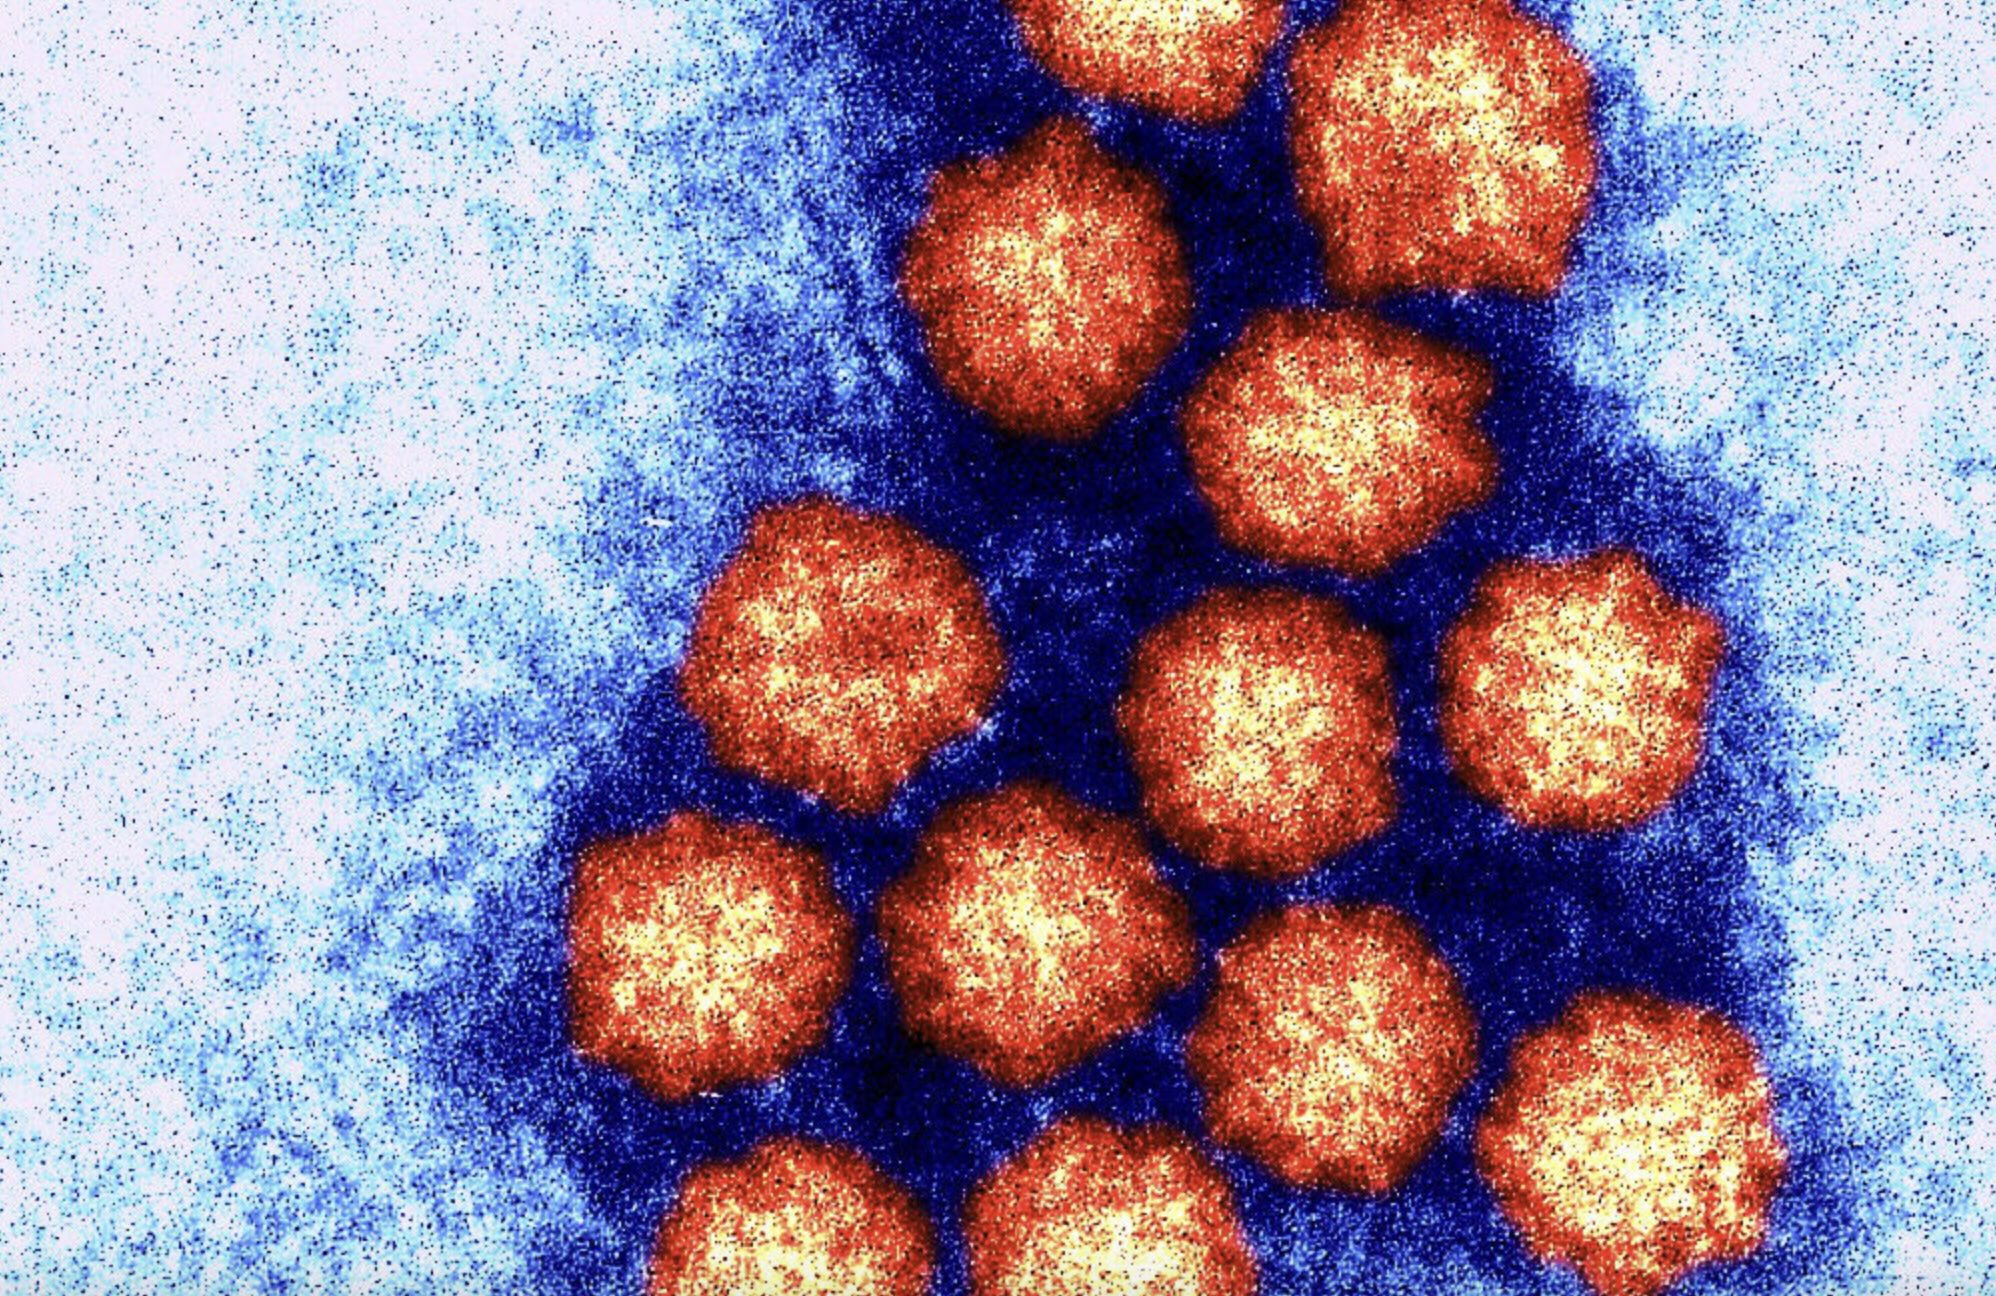 A colour-enhanced close up of norovirus